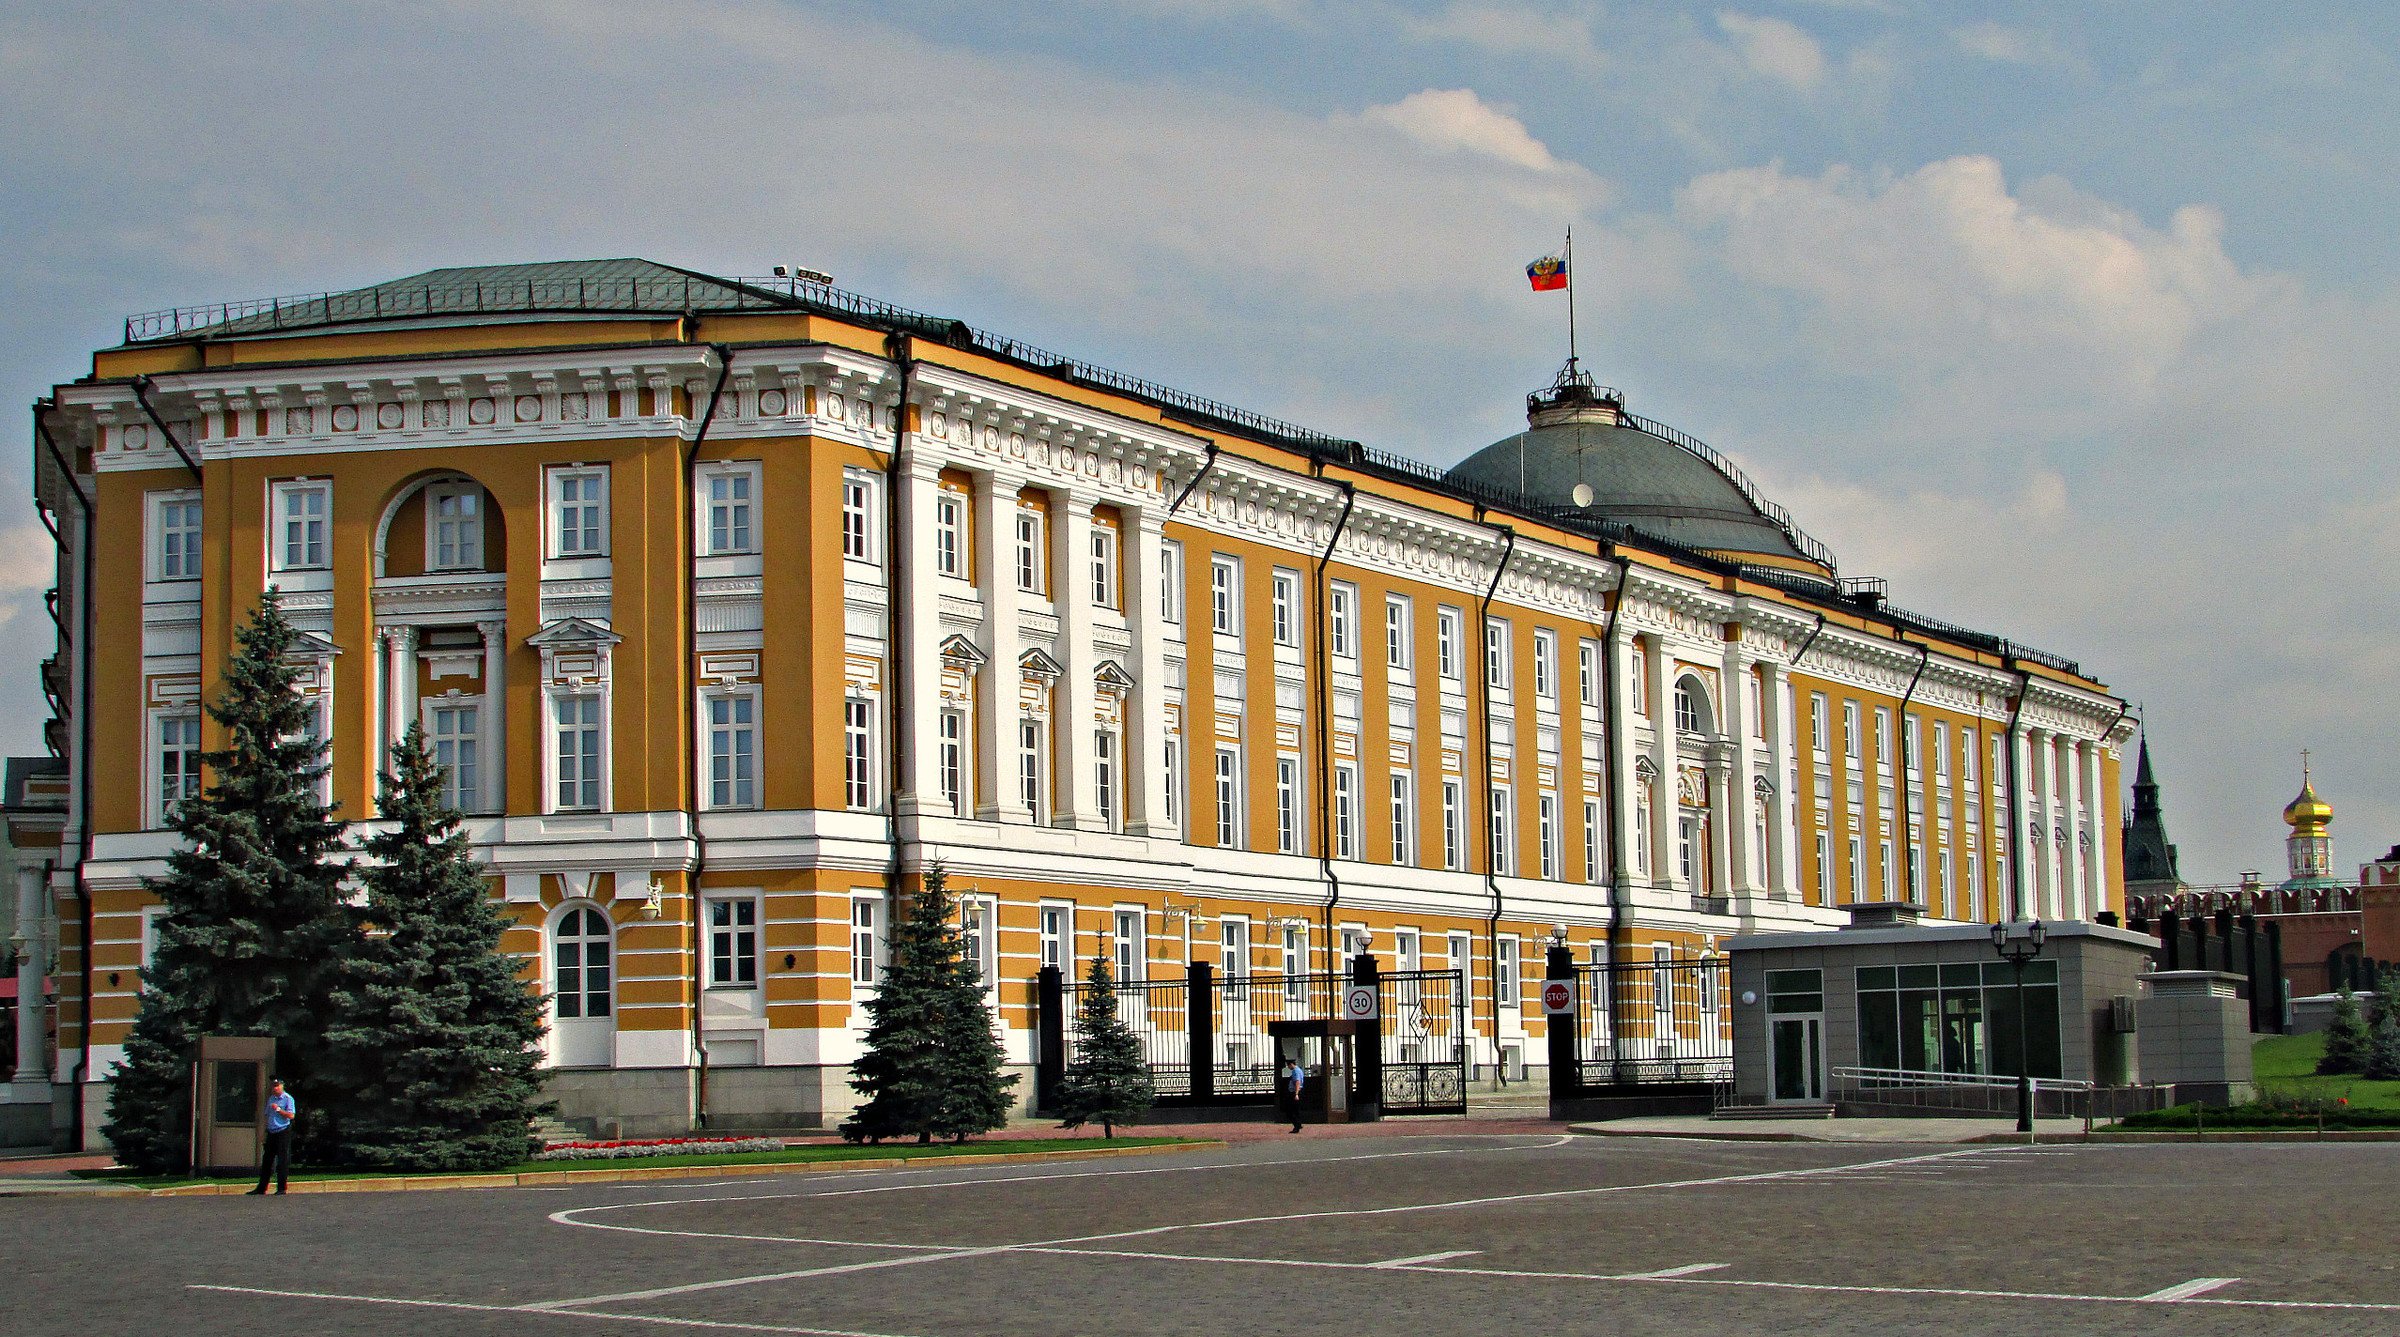 Сенатский дворец в кремле